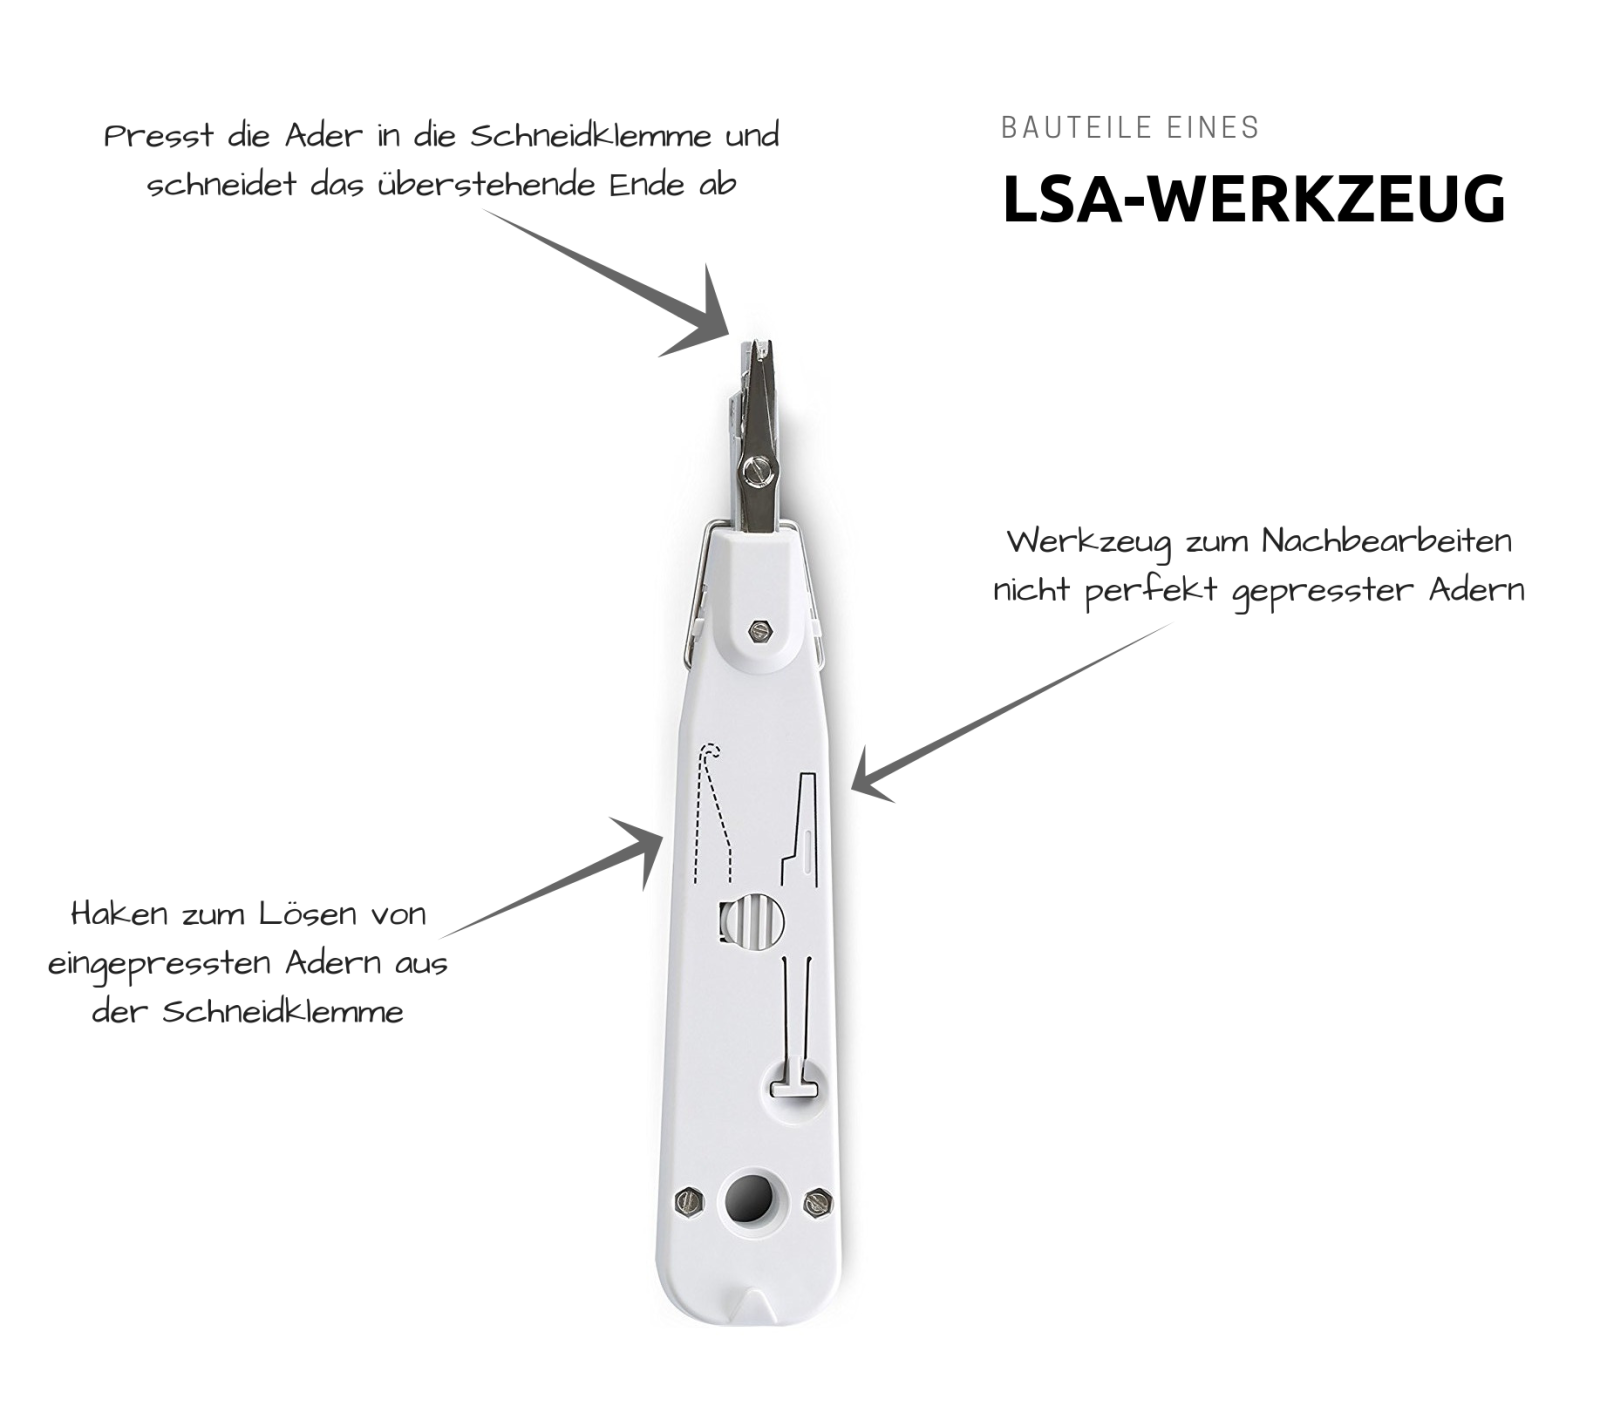 LSA-Werkzeug erklärt: Die Bauteile eines LSA-Werkzeug